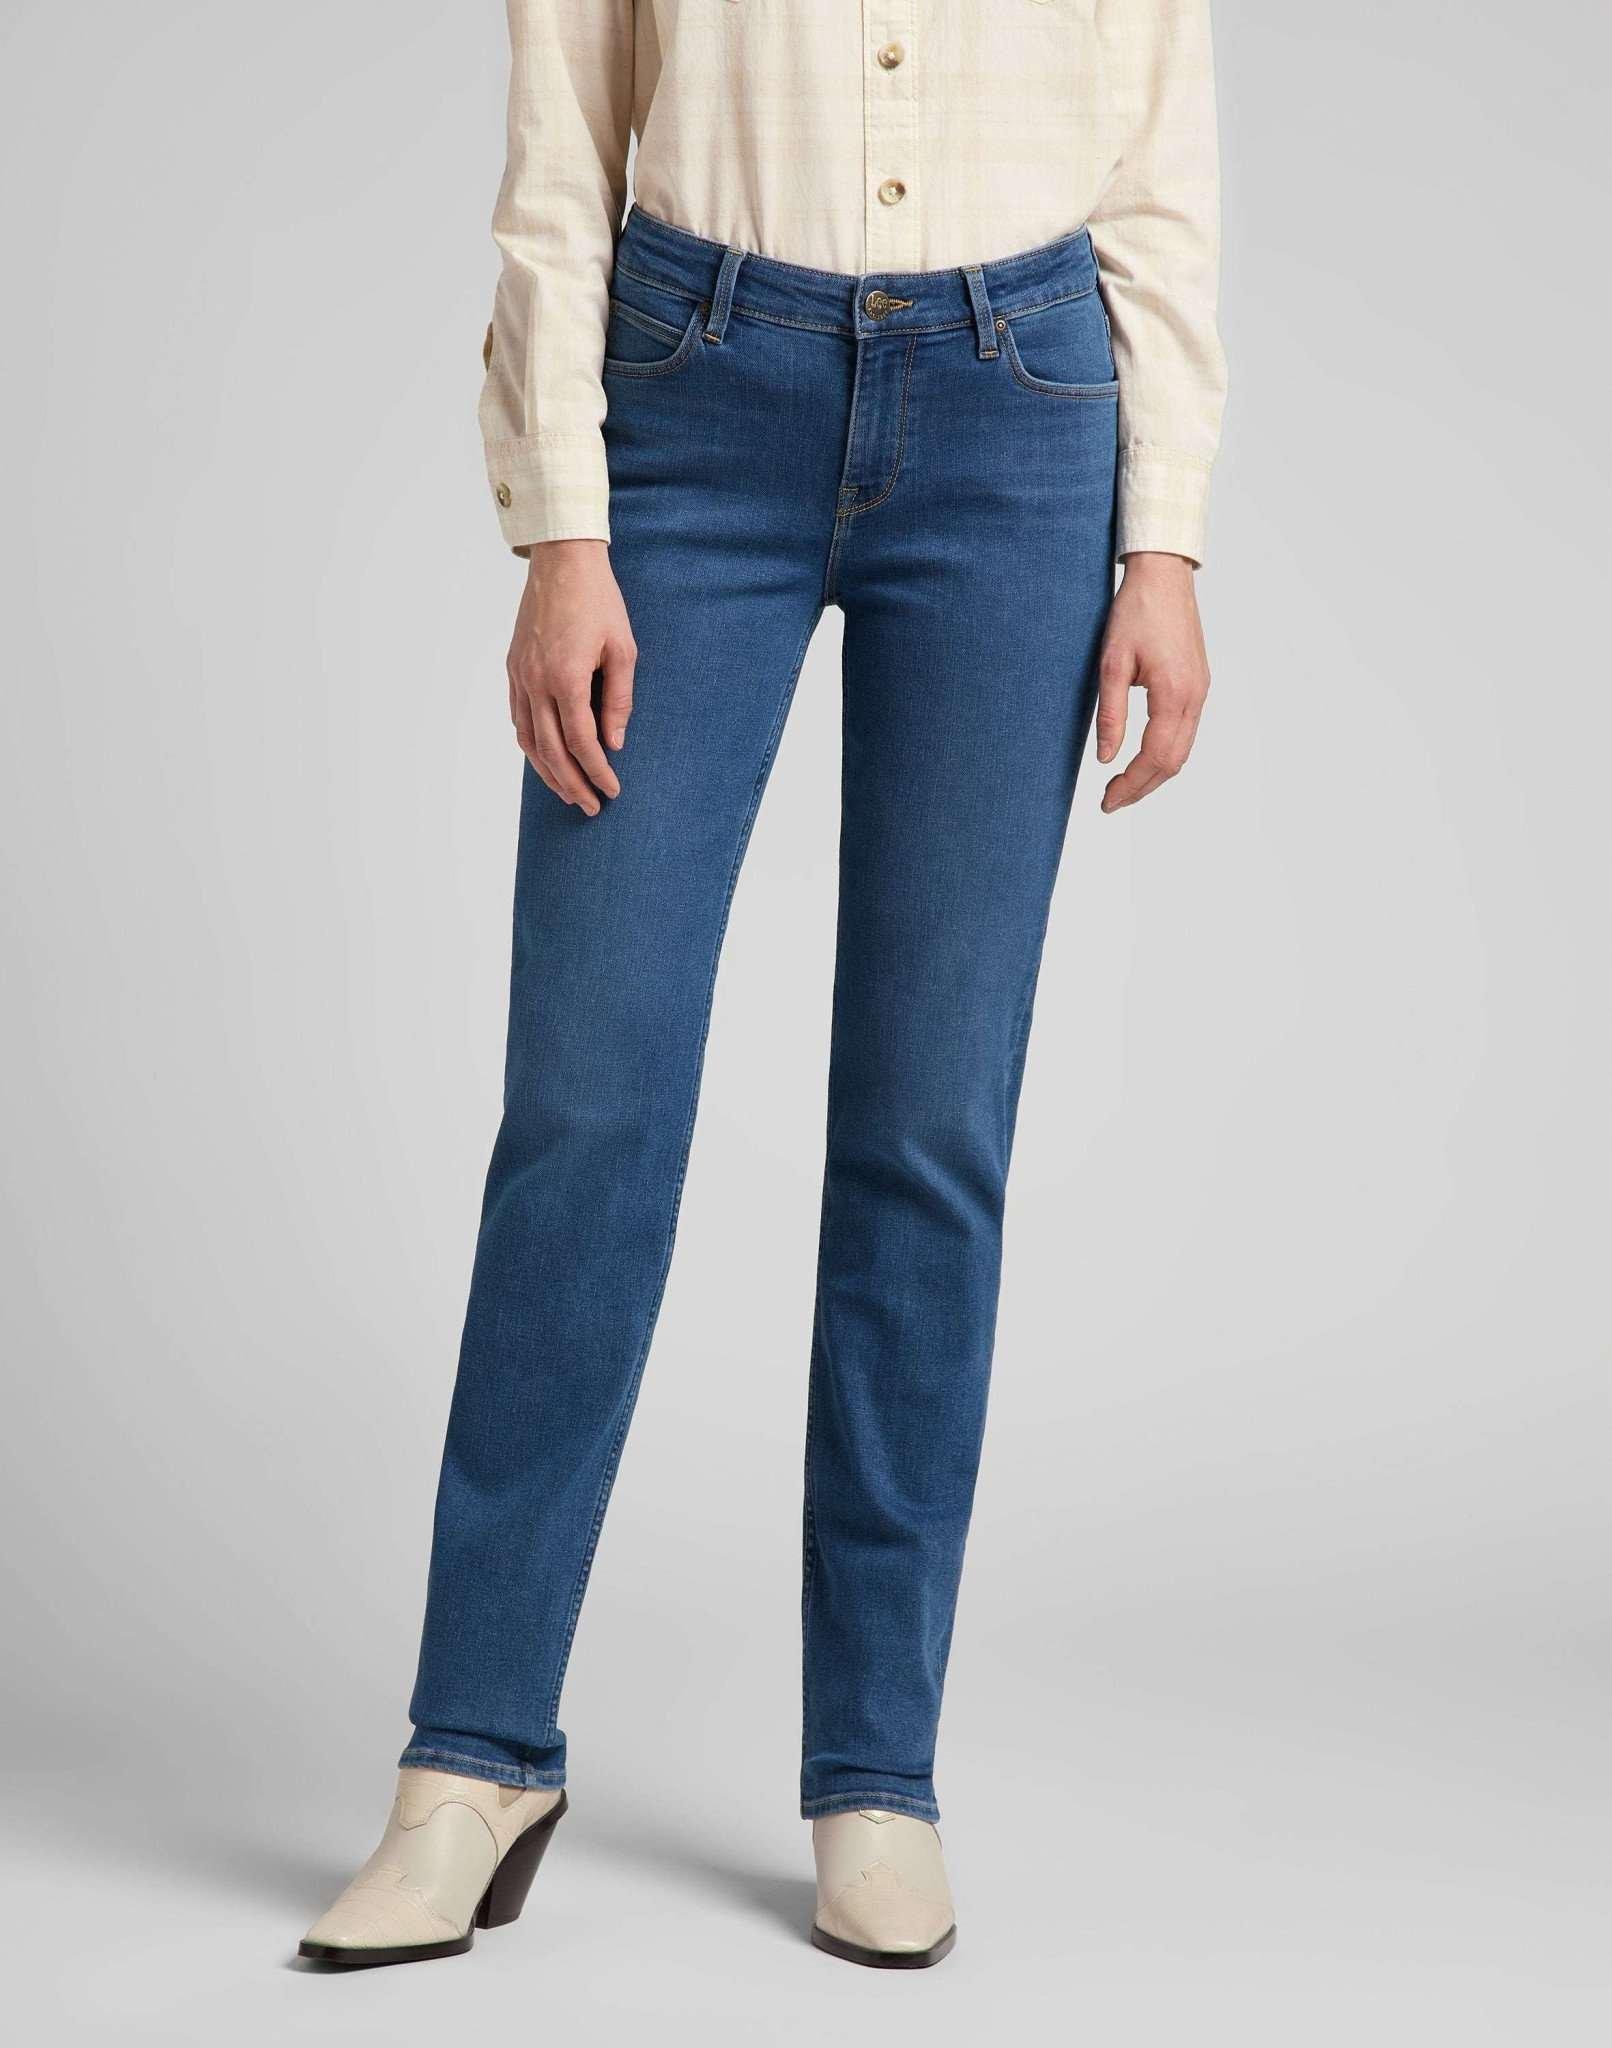 Jeans Straight Leg Marion Damen Blau Denim L35/W29 von Lee